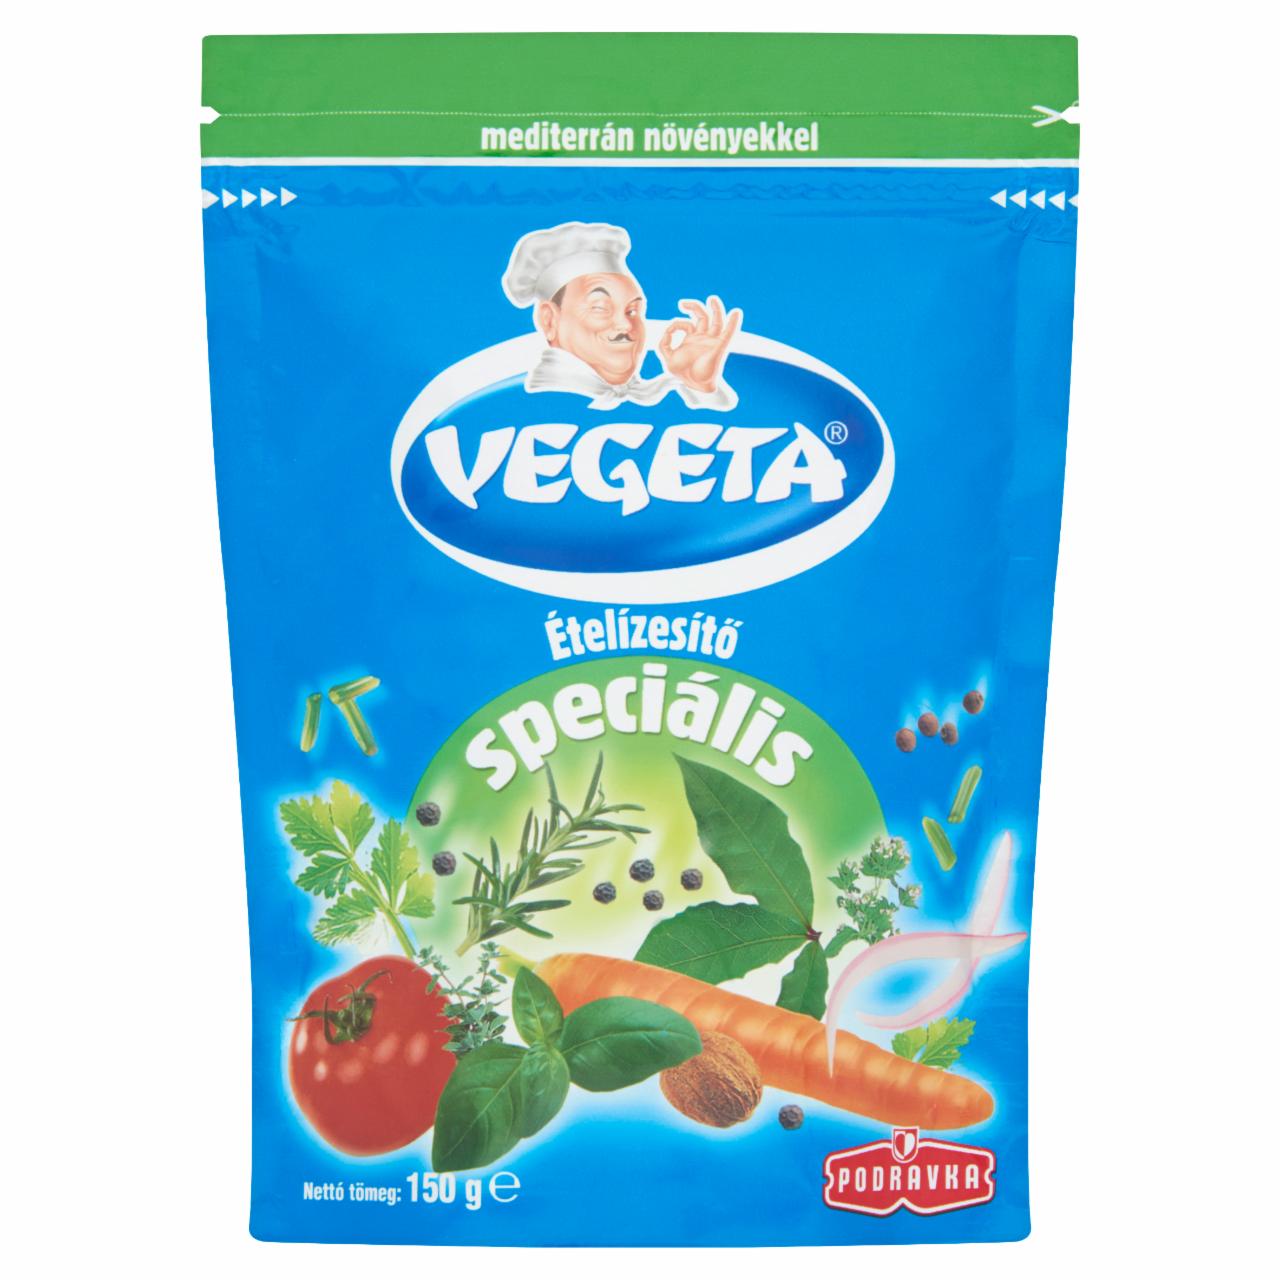 Képek - Vegeta speciális ételízesítő mediterrán növényekkel 150 g